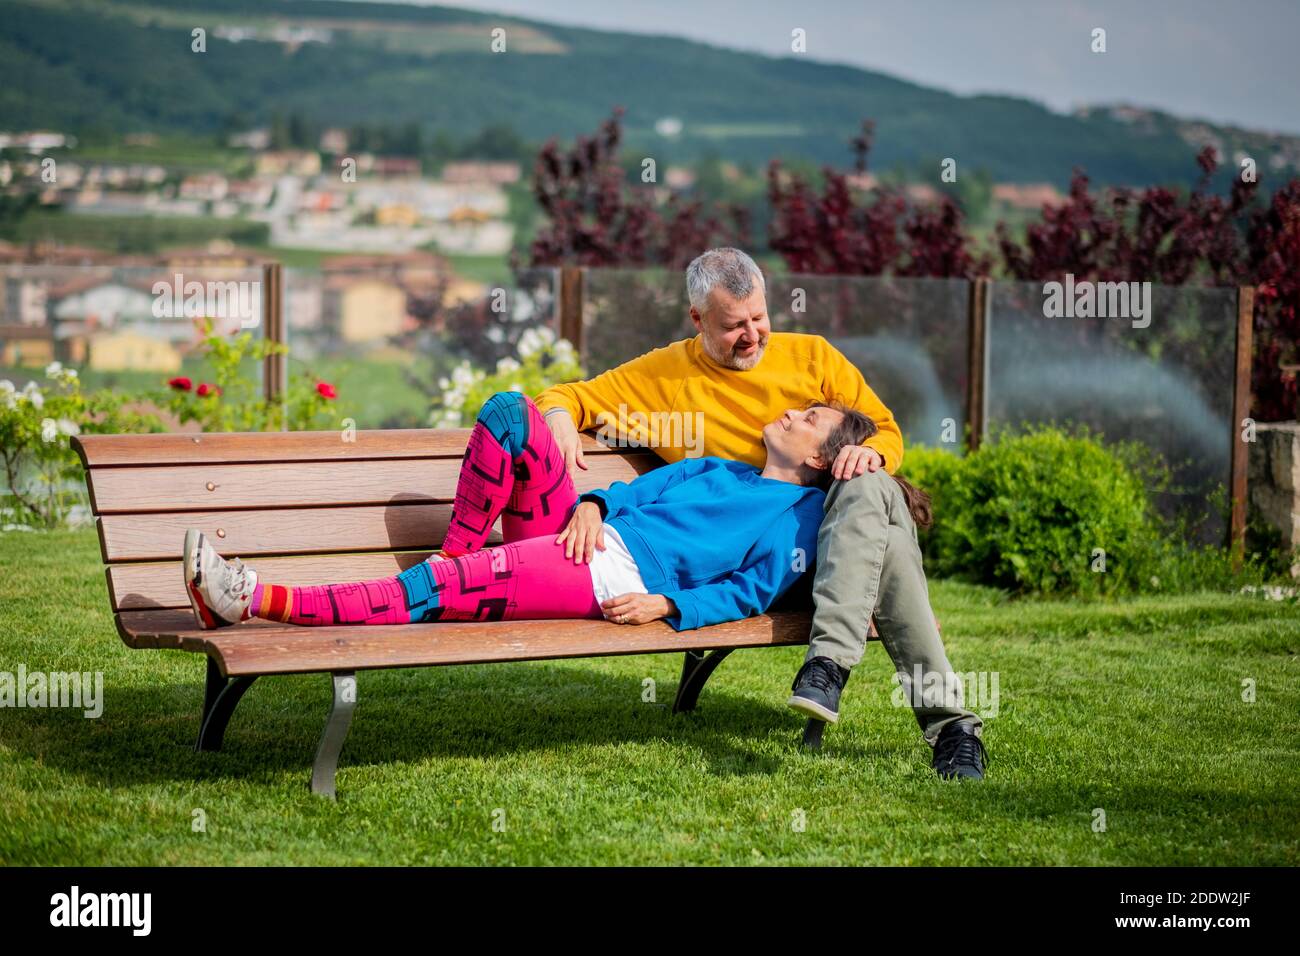 Attraktives Ehepaar im Park entspannen - glückliche Liebhaber Und sportliches Paar auf der Bank - Paar sitzt auf Außenbank zusammen Stockfoto